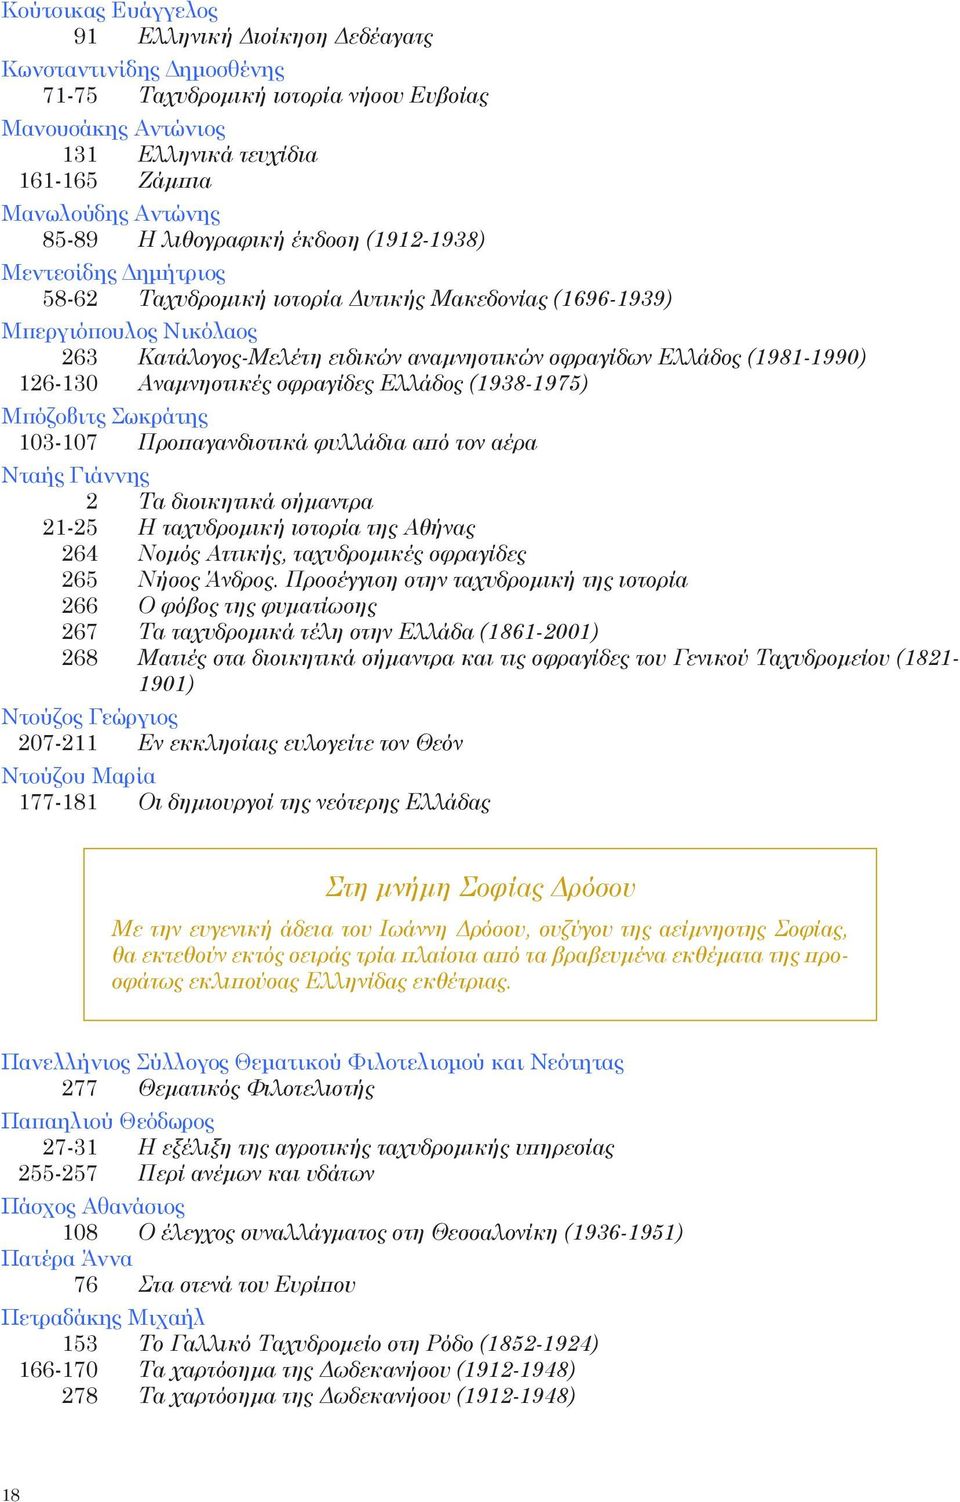 (1981-1990) 126-130 Αναμνηστικές σφραγίδες Ελλάδος (1938-1975) Μπόζοβιτς Σωκράτης 103-107 Προπαγανδιστικά φυλλάδια από τον αέρα Νταής Γιάννης 2 Τα διοικητικά σήμαντρα 21-25 Η ταχυδρομική ιστορία της